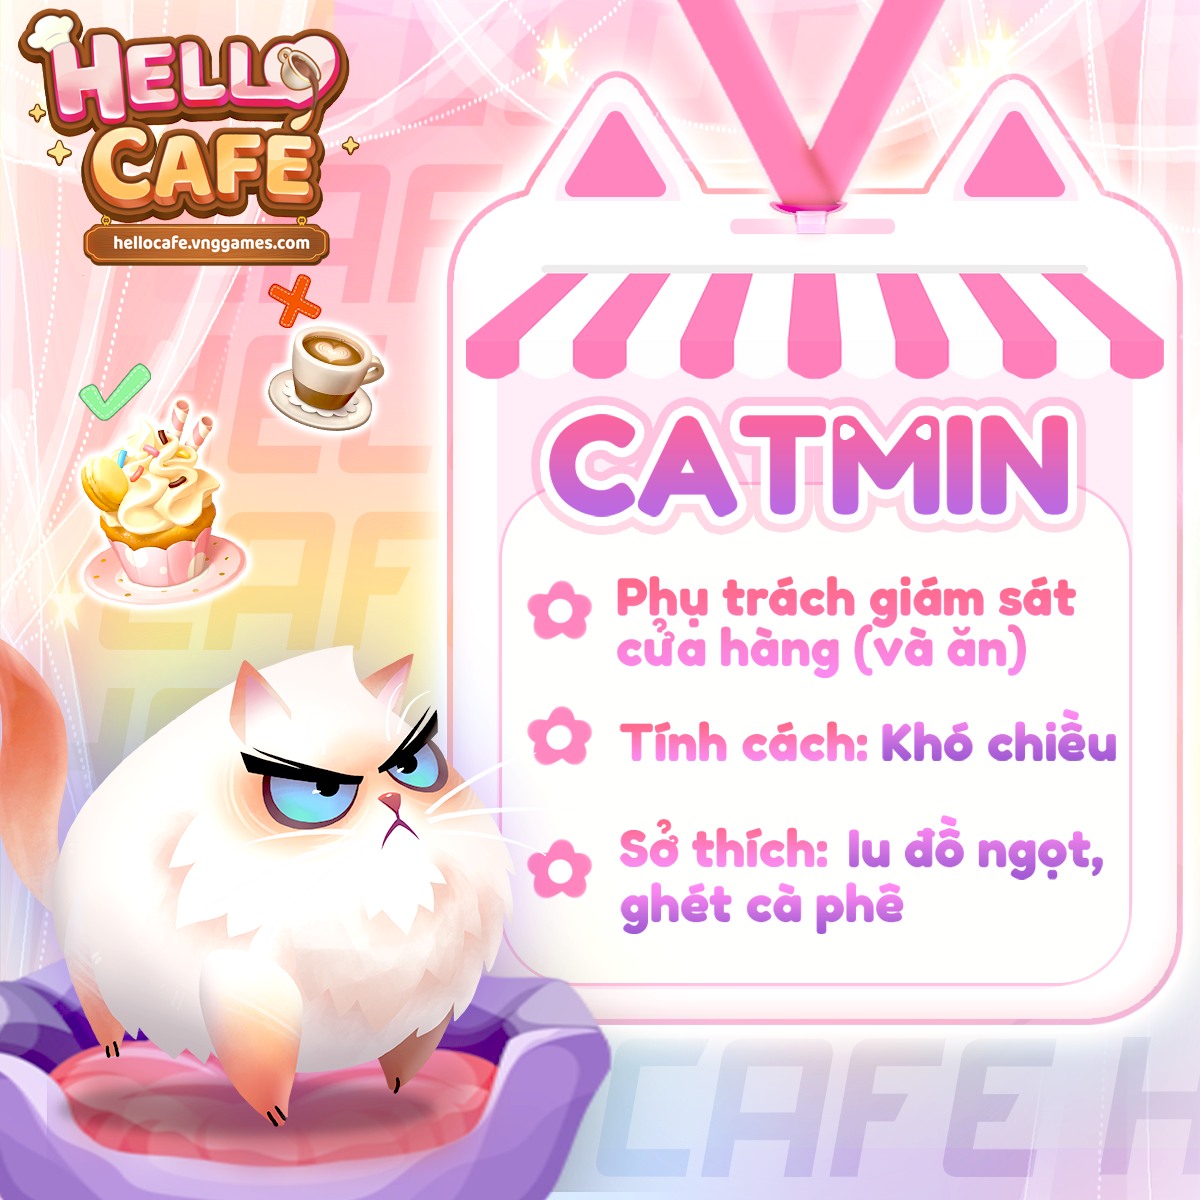 Catmin - bạn đồng hành của người chơi trong Hello Café (Nguồn: Hello Café)